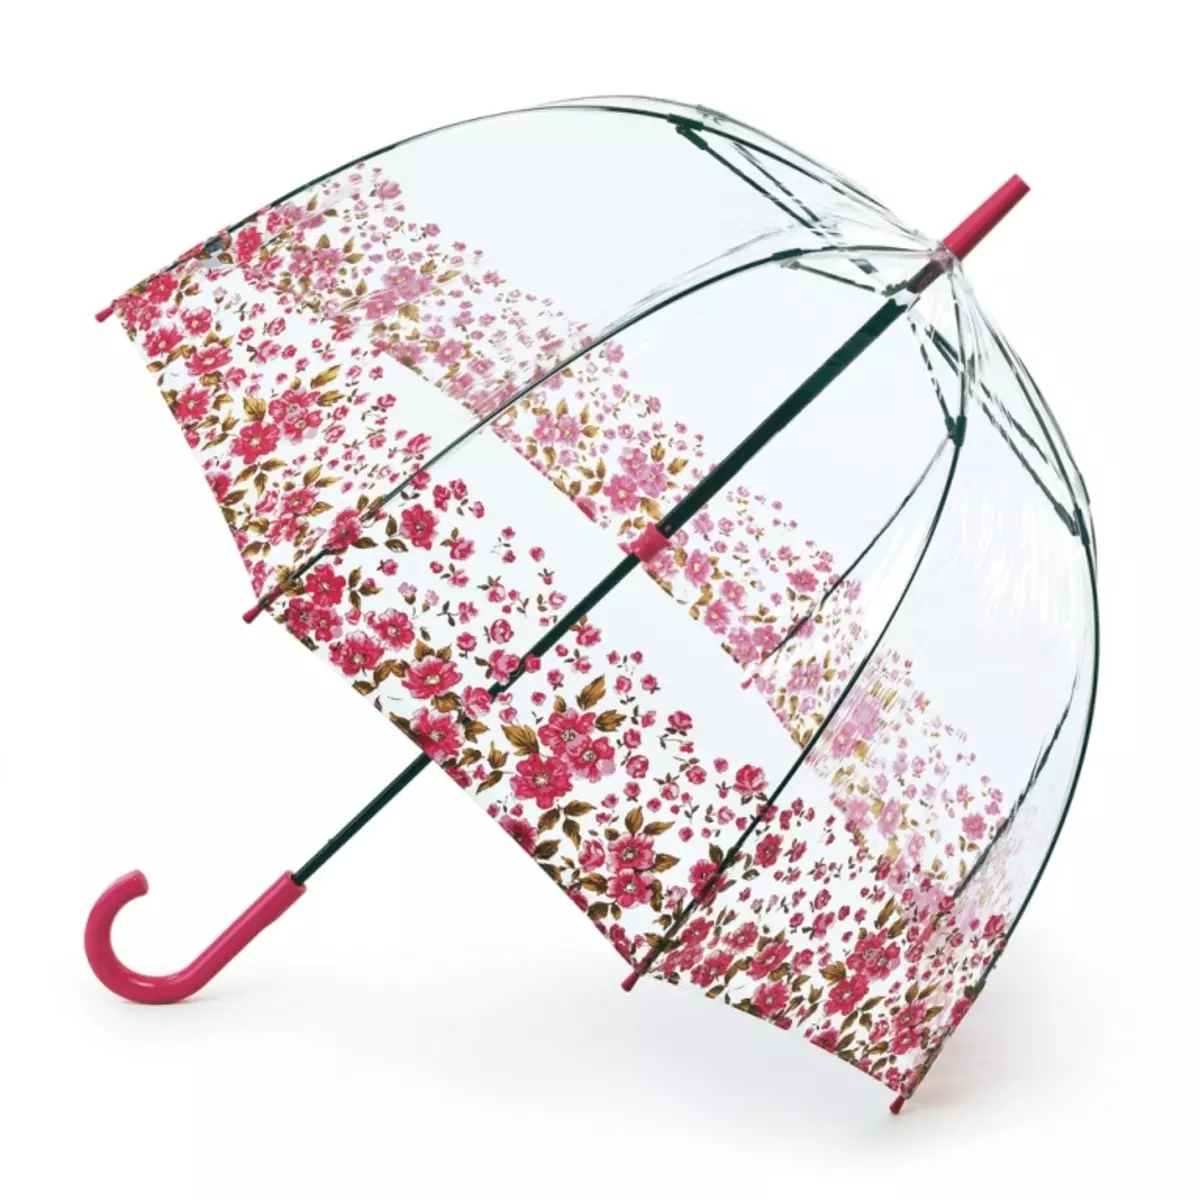 Купить прочный зонтик. Зонт Амбрелла прозрачный. Зонтик женский. Необычные зонты. Красивый зонт.